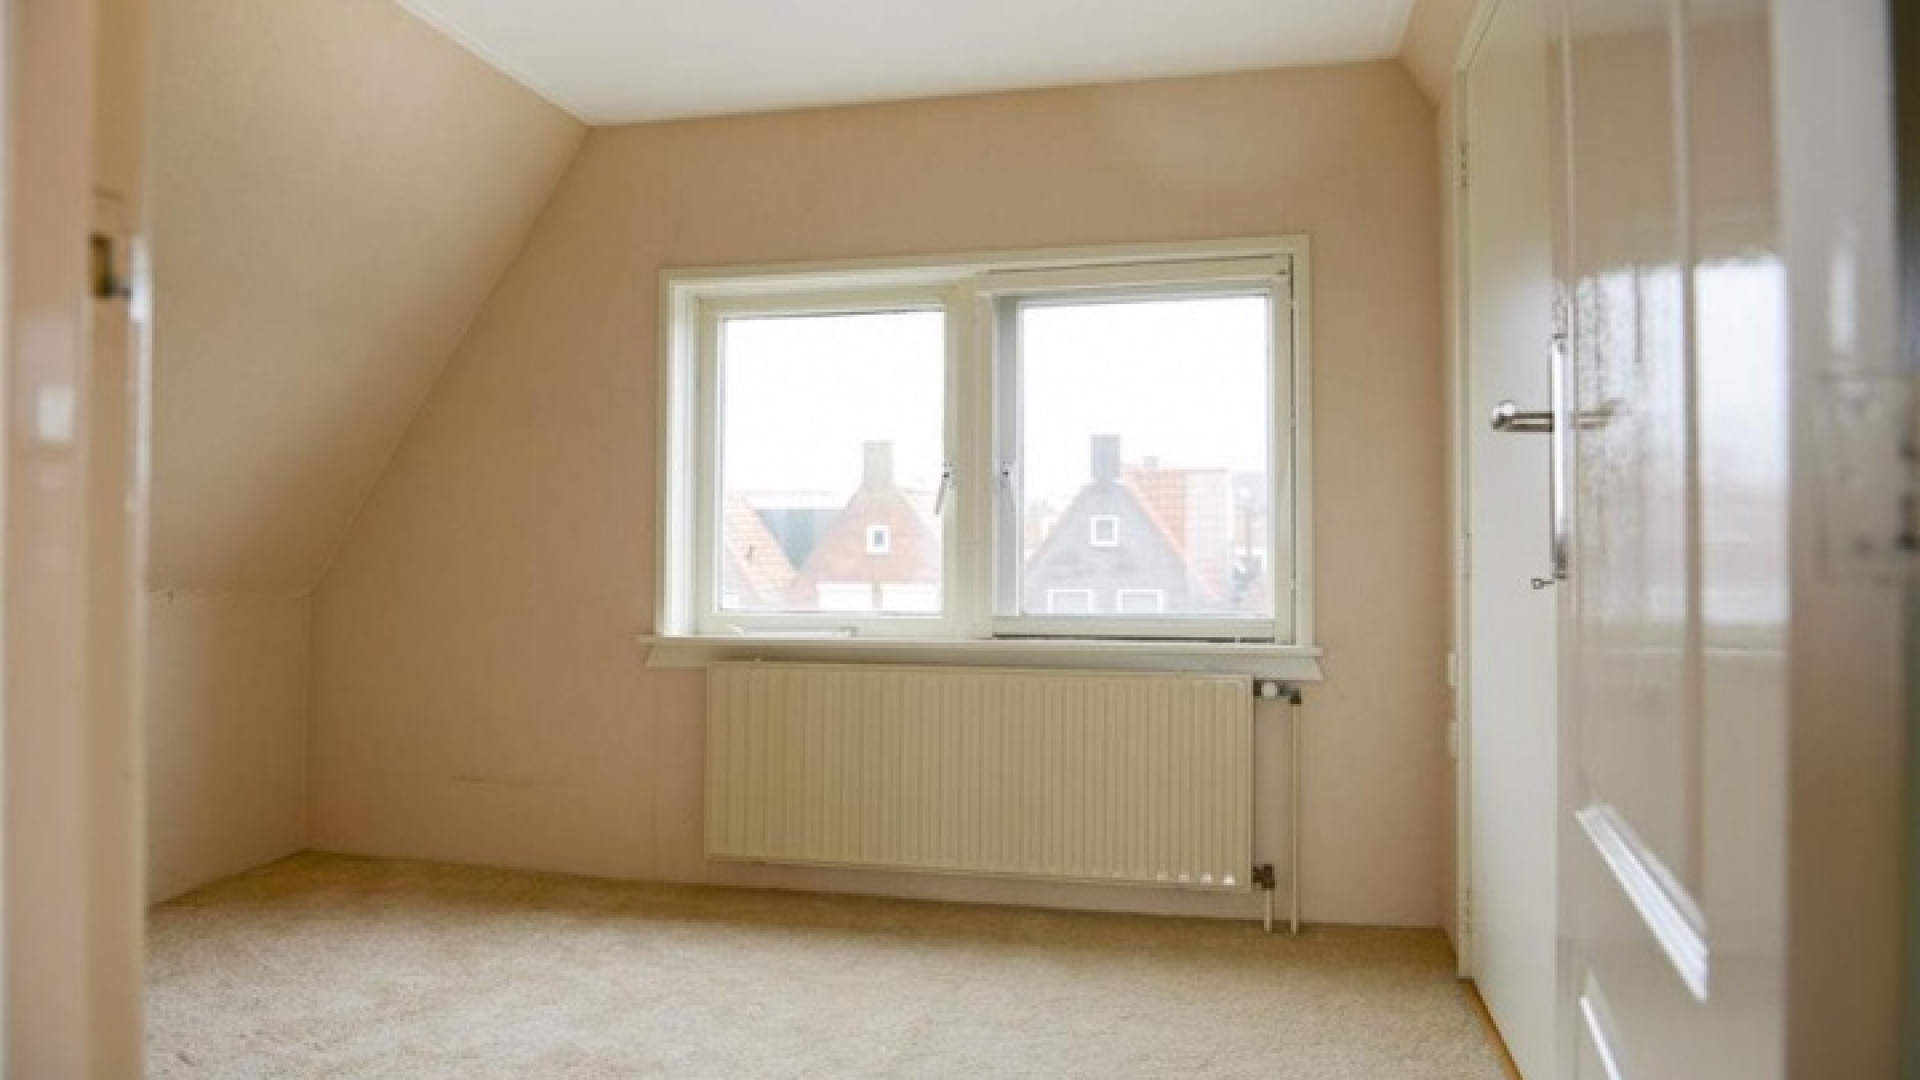 Huis Yolanthe in Volendam eindelijk verkocht. Zie foto's 14